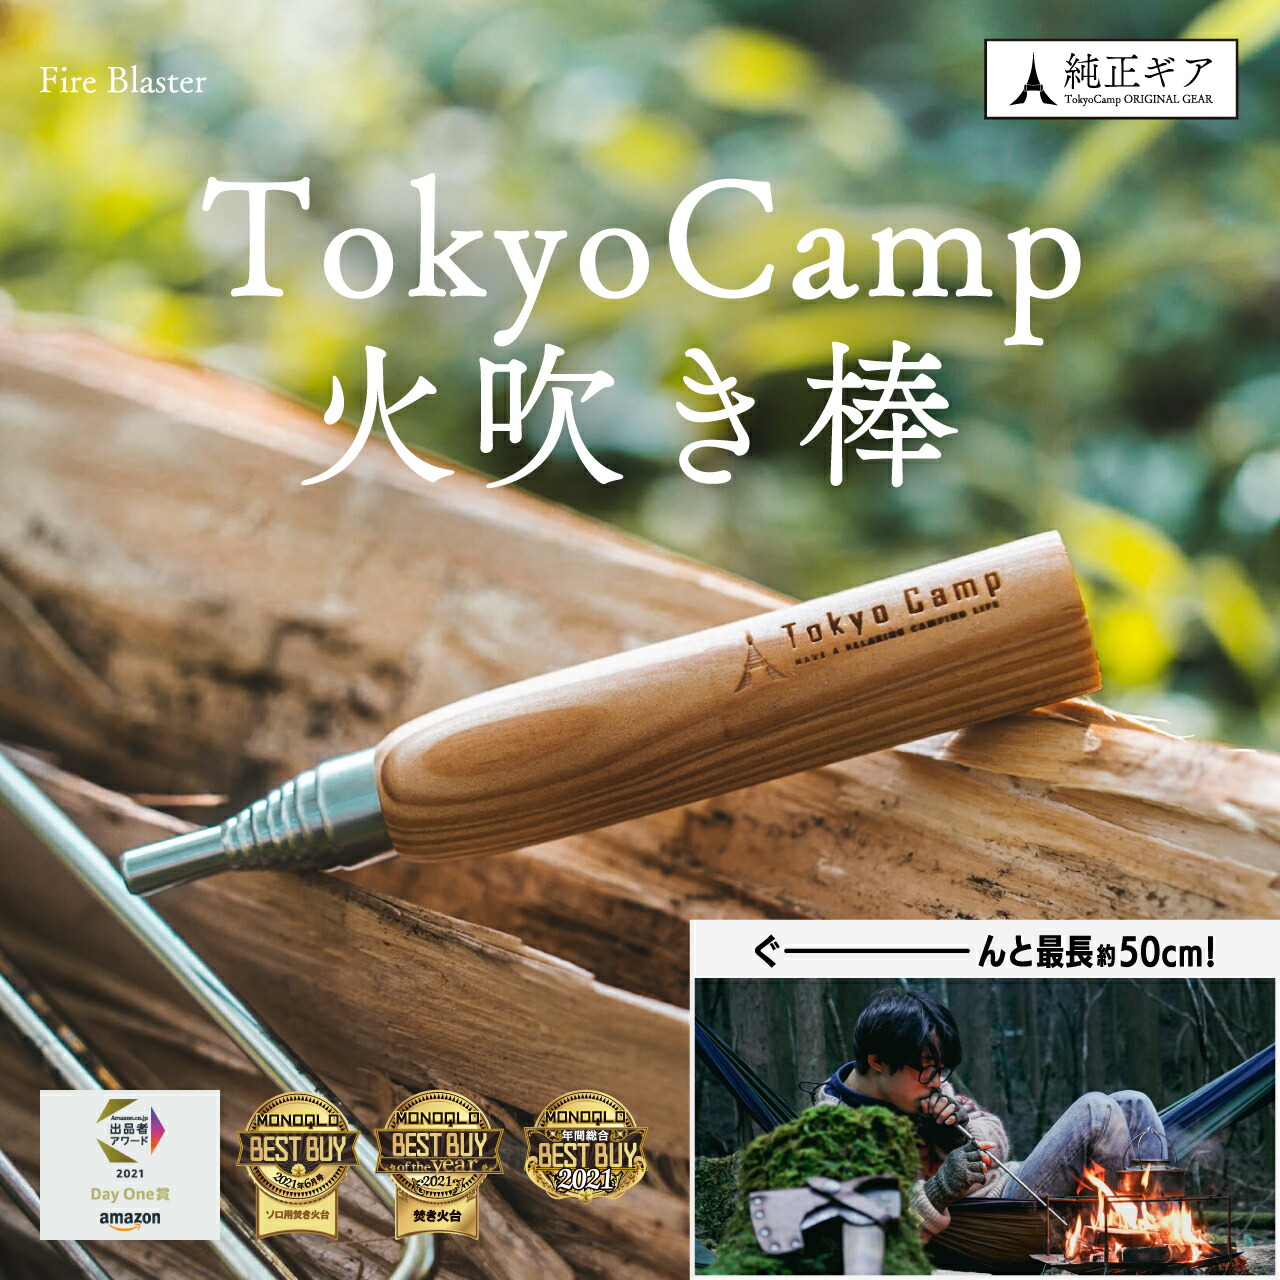 新色新色TokyoCamp 火吹き棒 伸縮式 コンパクト 火起こし ふいご キャンプ 焚き火 焚火 天然木 バーべキュー・クッキング用品 